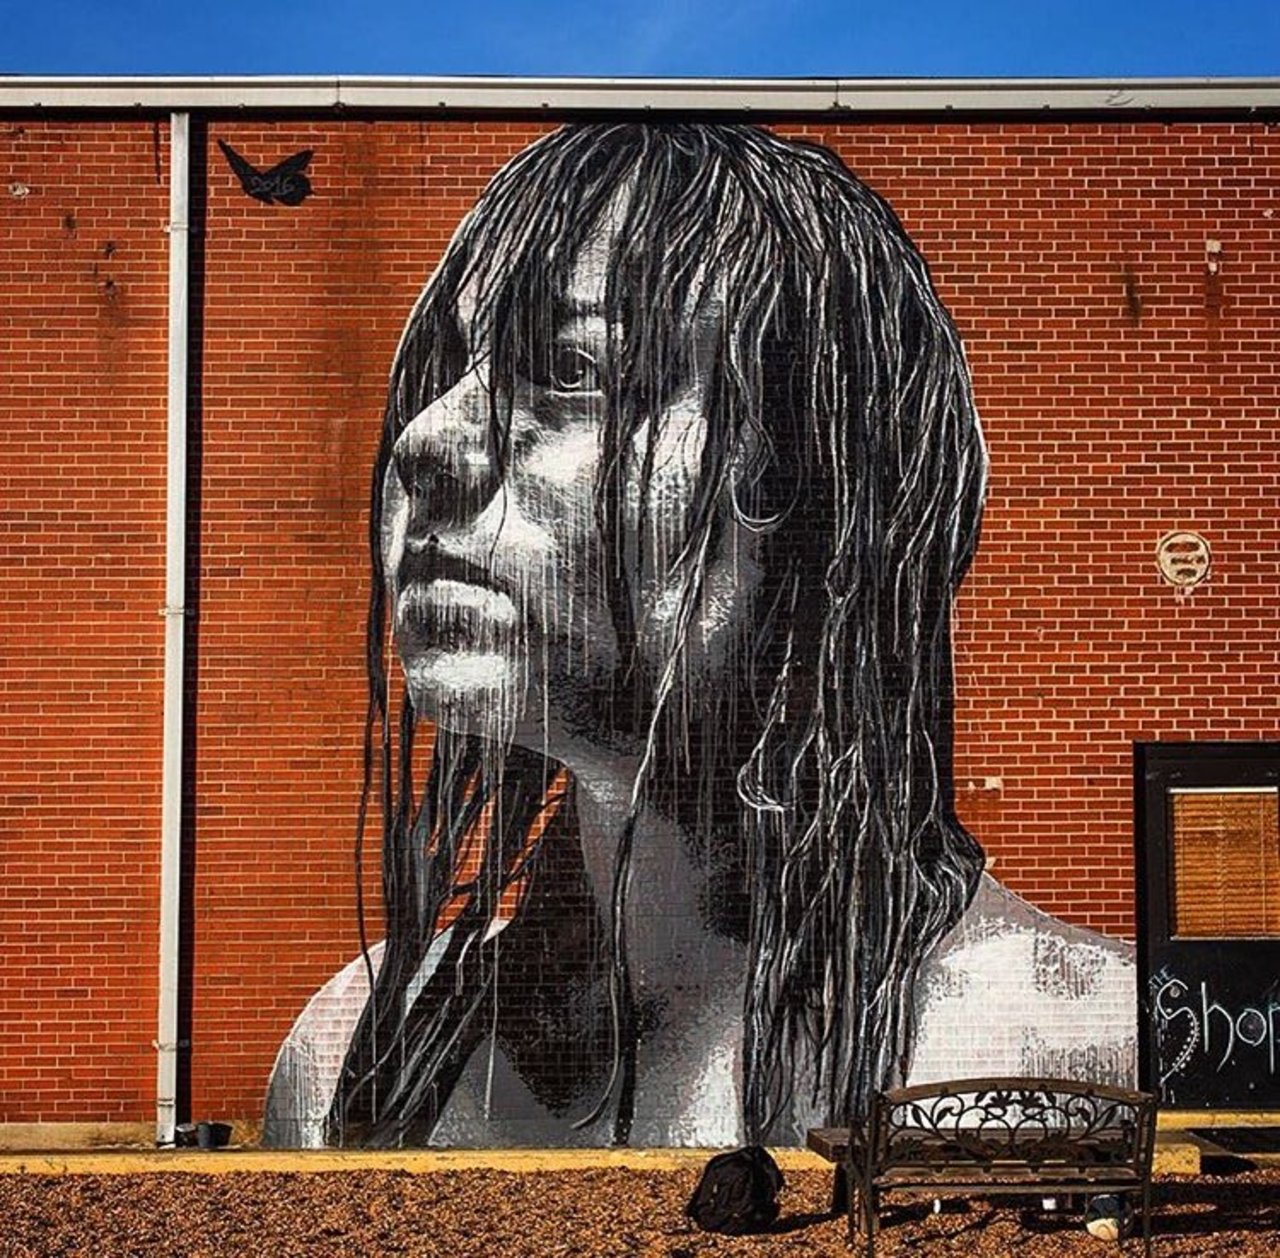 New Street Art by Nilsrva Richmond, Virginia  #art #mural #graffiti #streetart https://t.co/Umyb3PmVoa